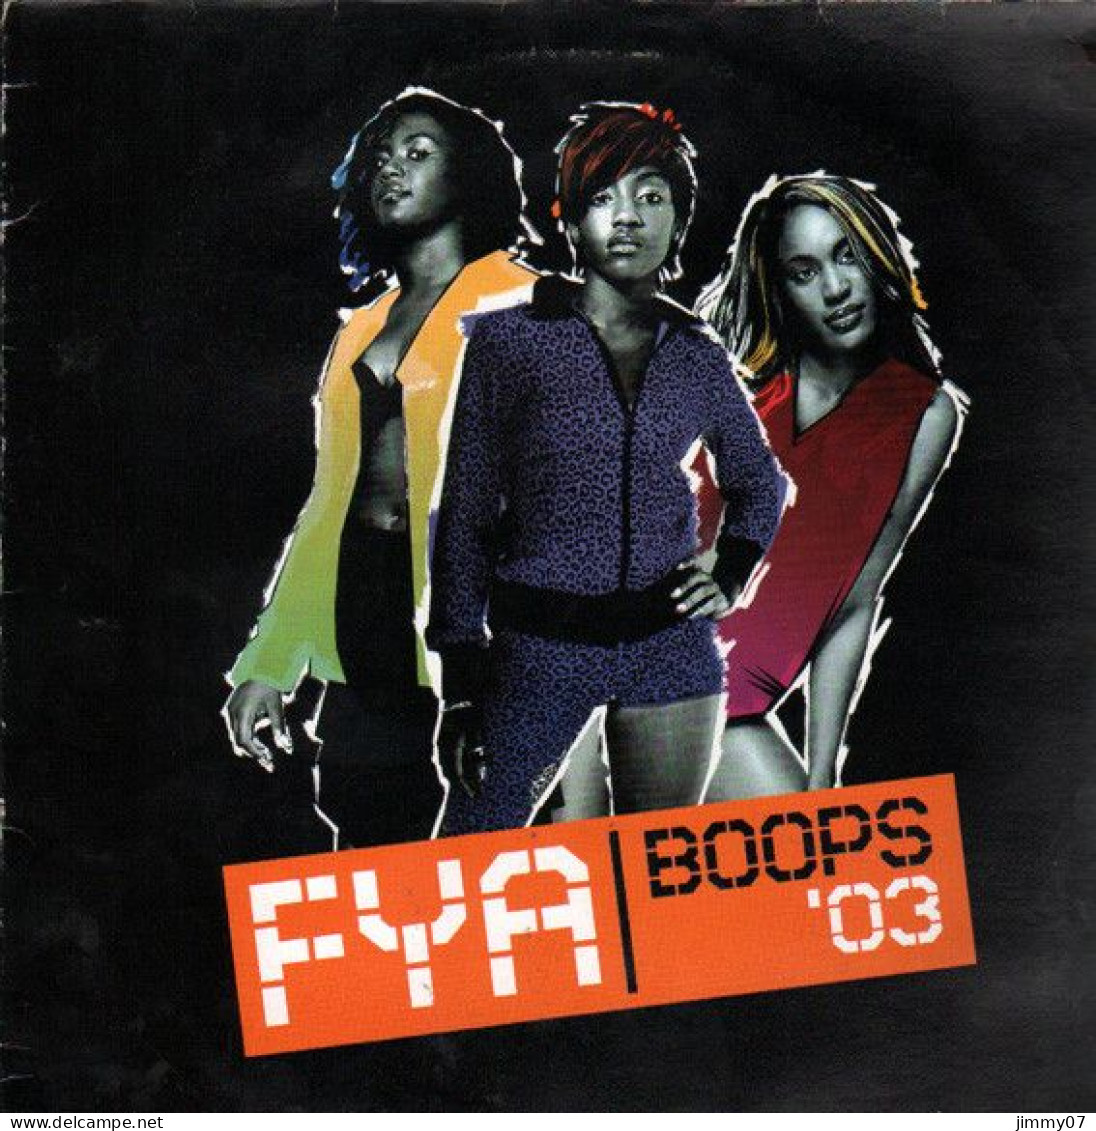 FYA - Boops '03 (12", Maxi) - 45 G - Maxi-Single